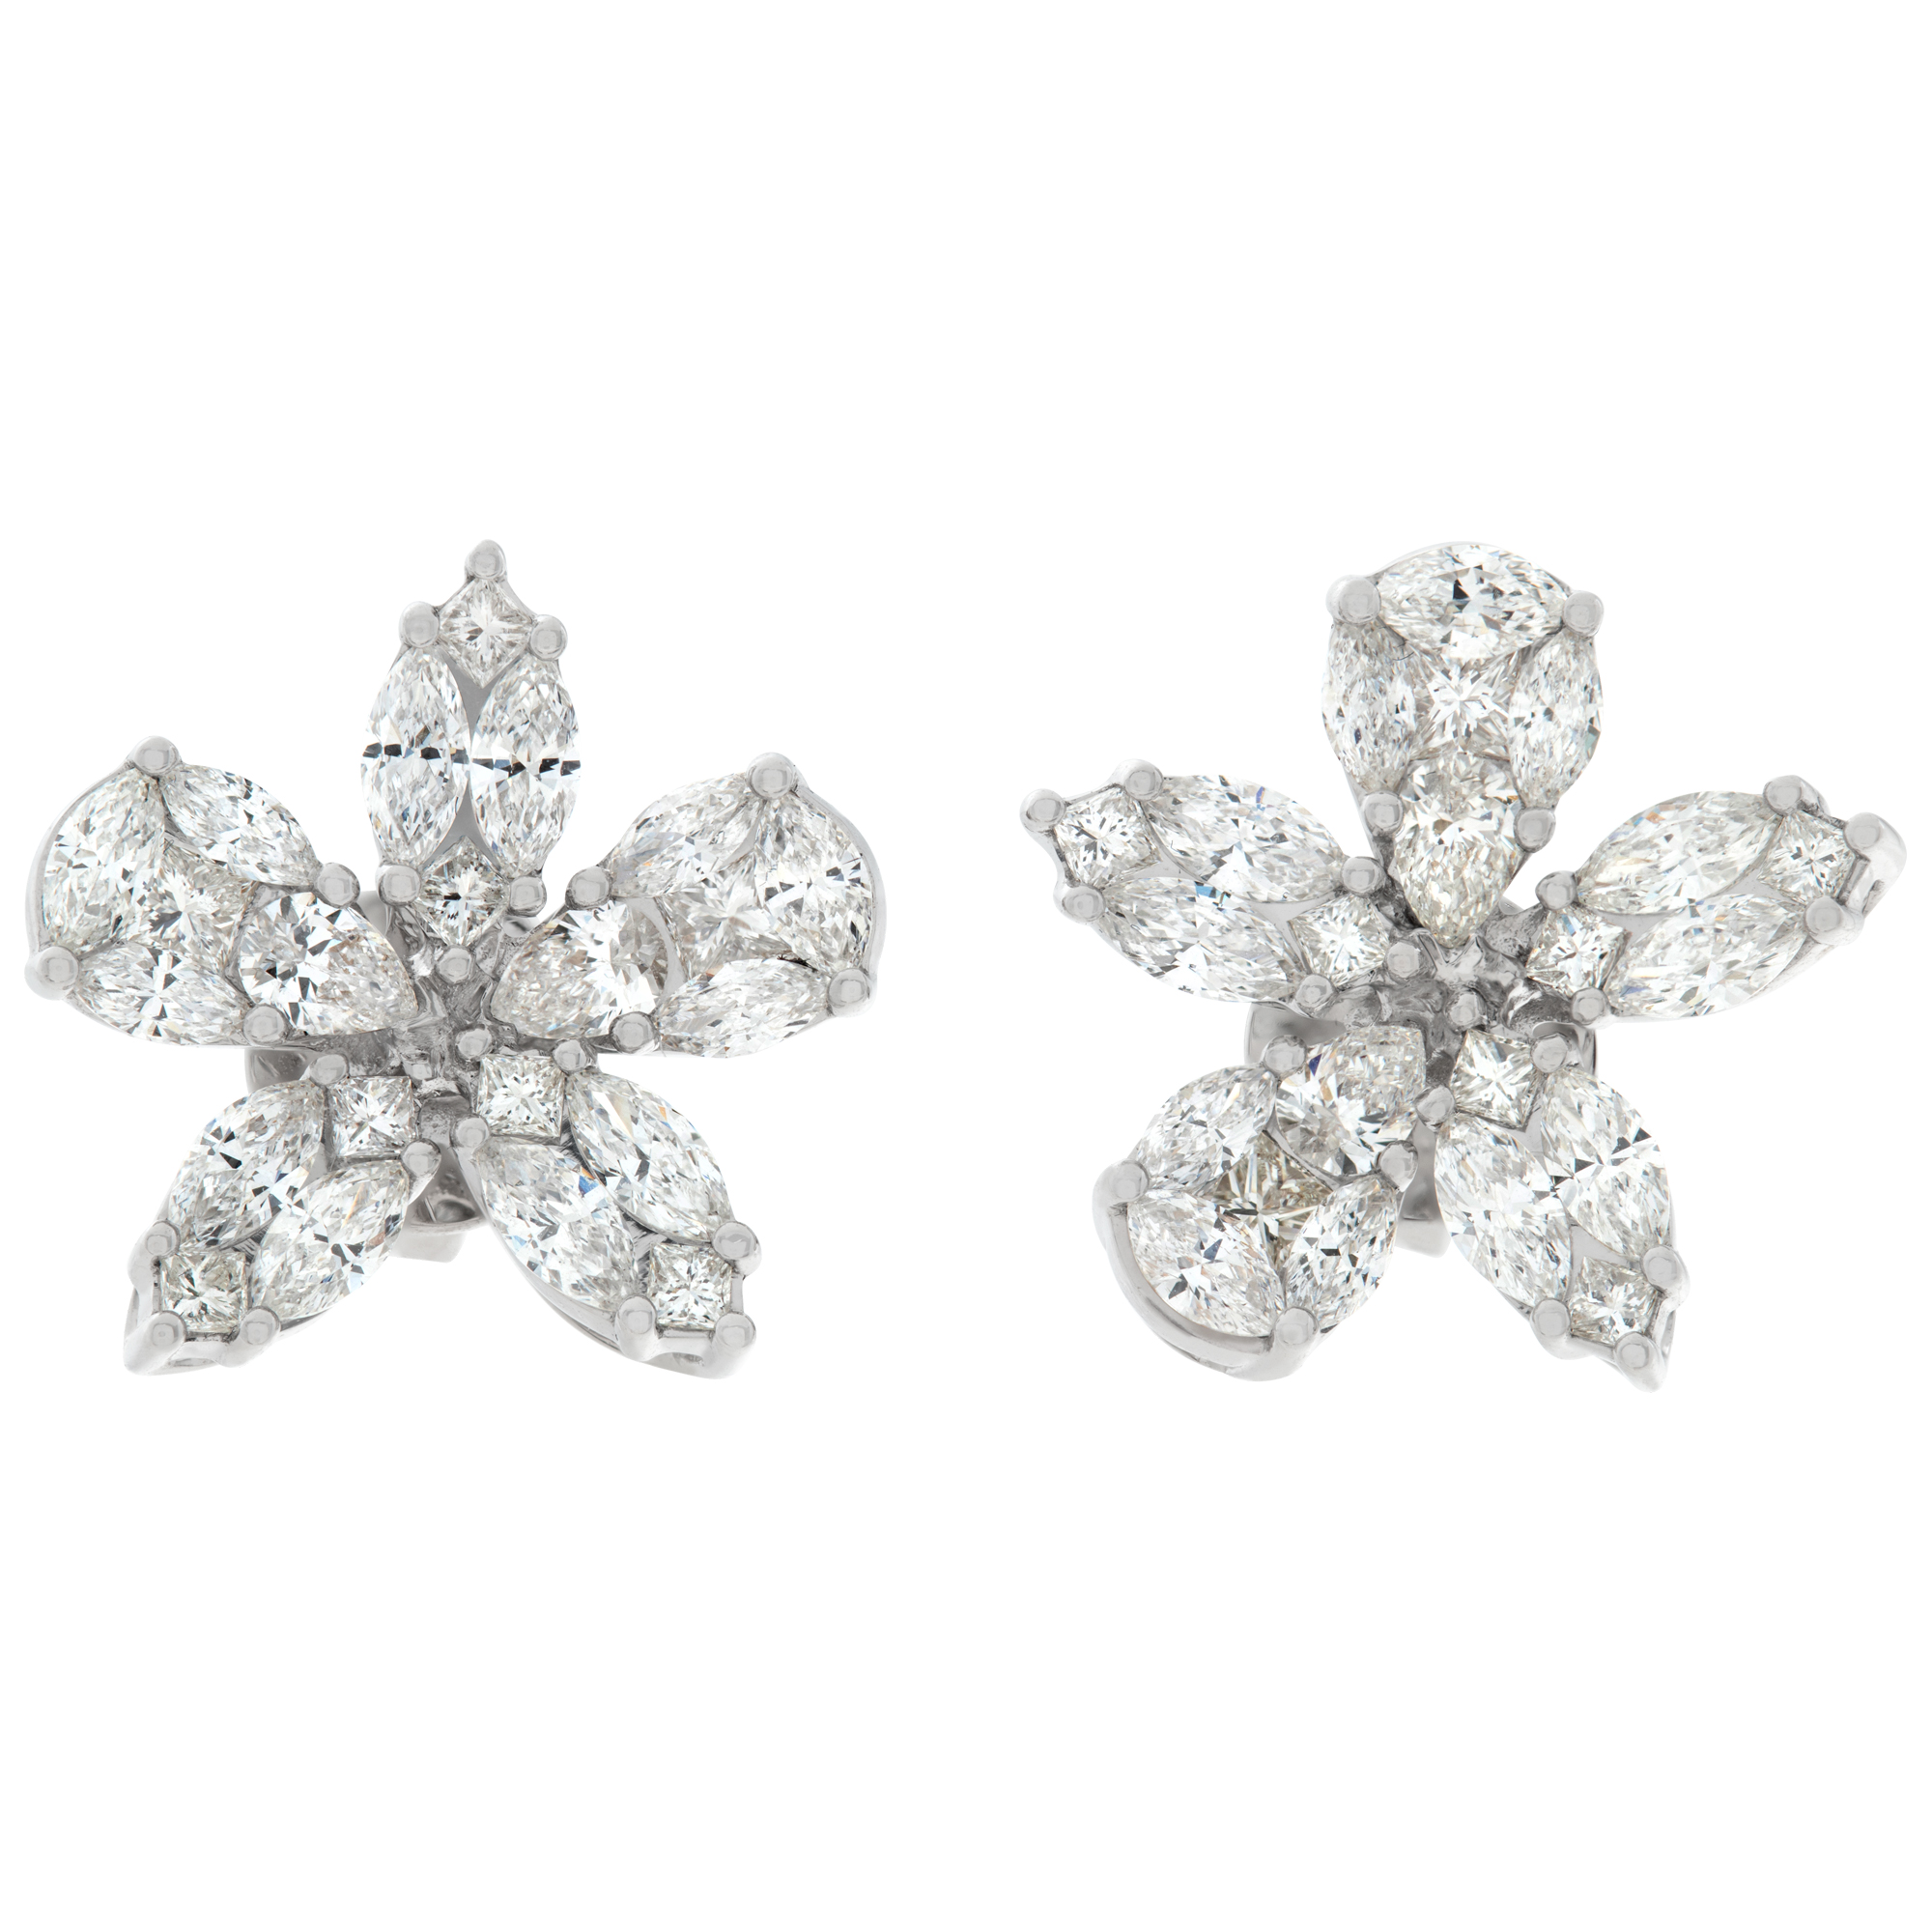 Flower Shaped Illusion set diamond earrings in 18k white gold